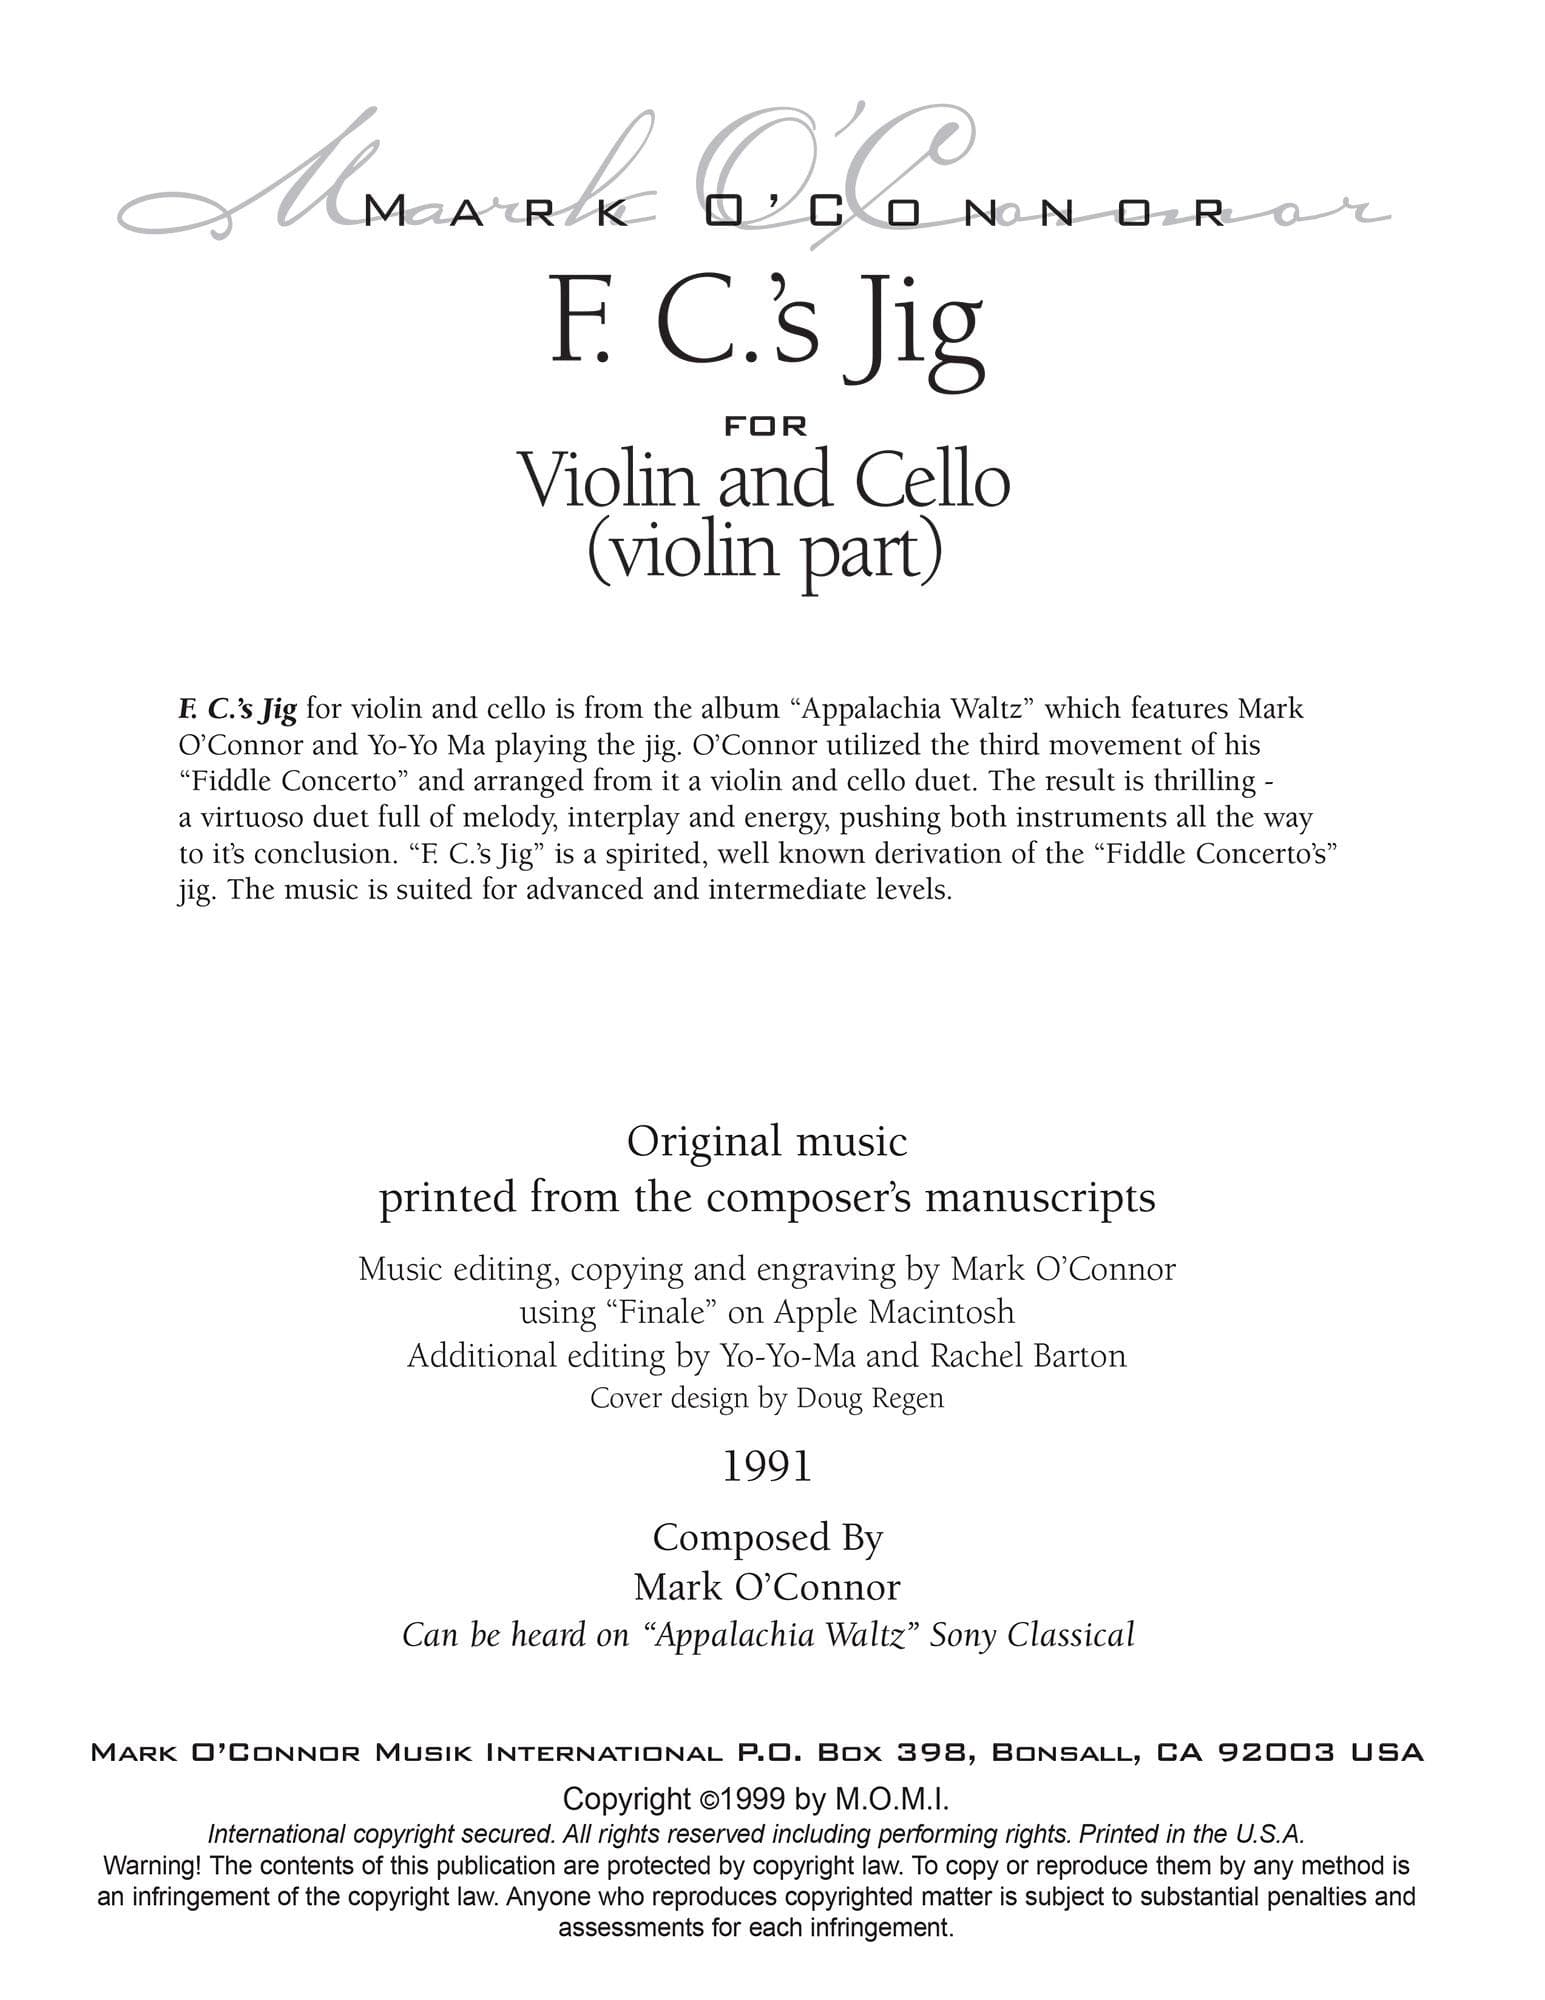 O'Connor, Mark - F.C.'s Jig for Violin and Cello - Violin - Digital Download